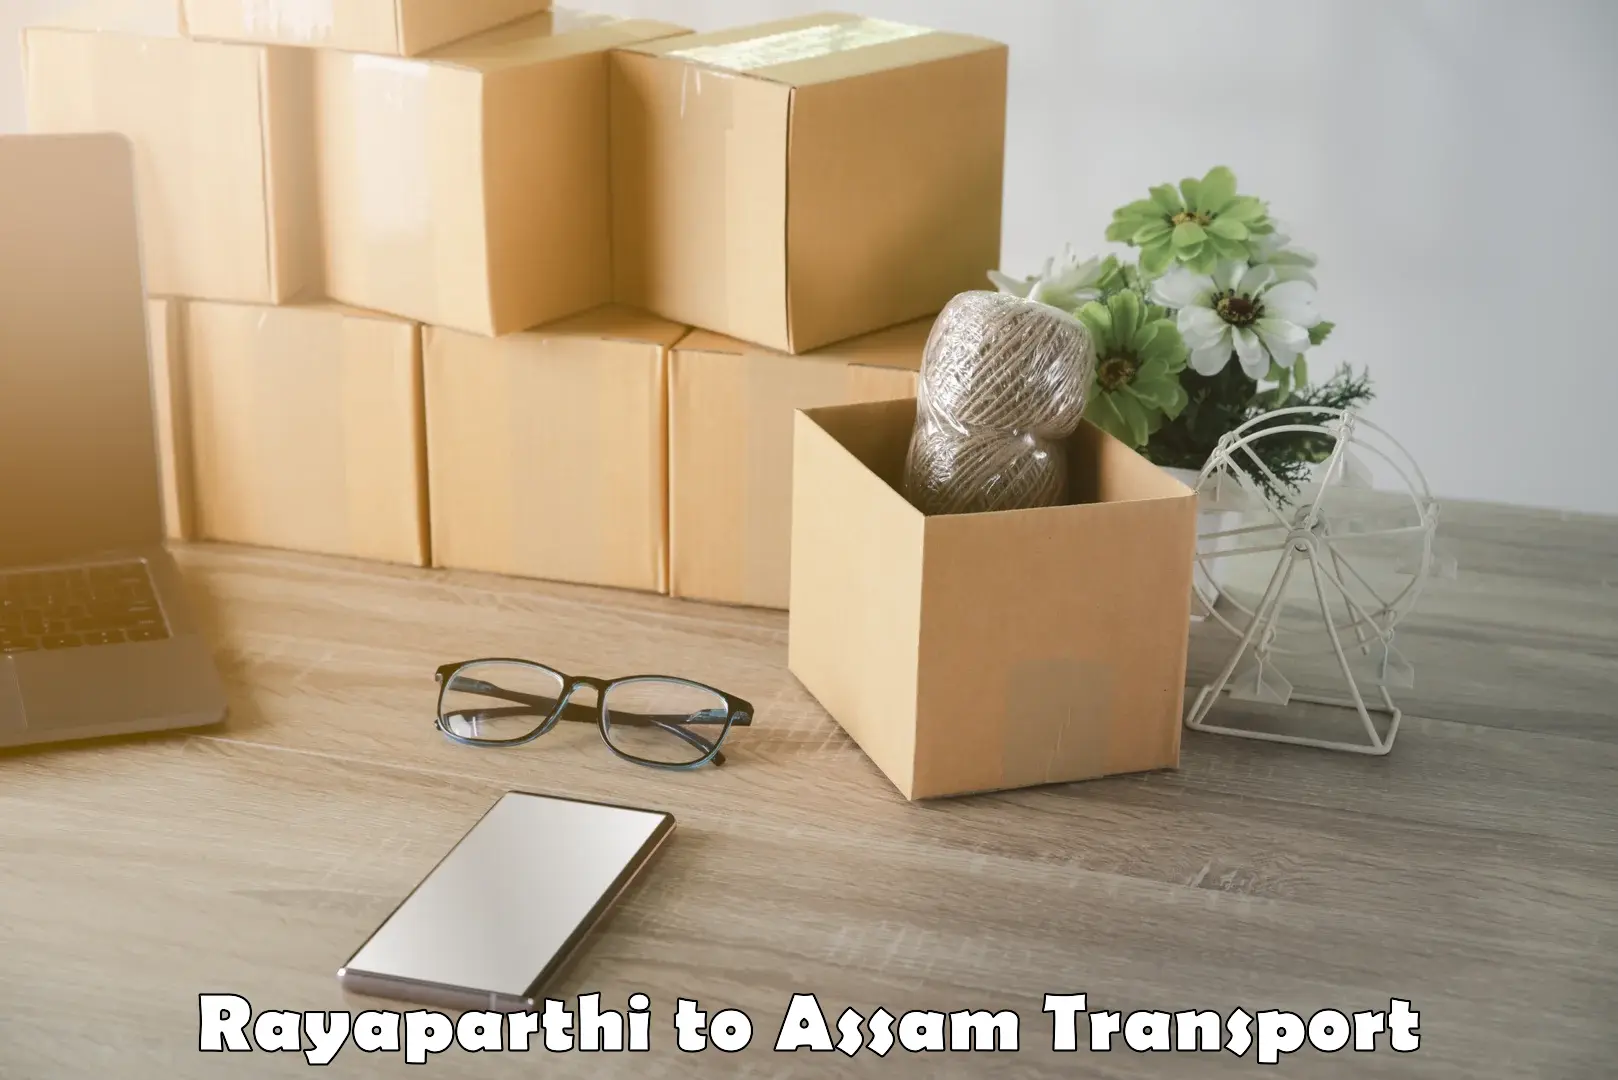 Online transport booking Rayaparthi to Tinsukia